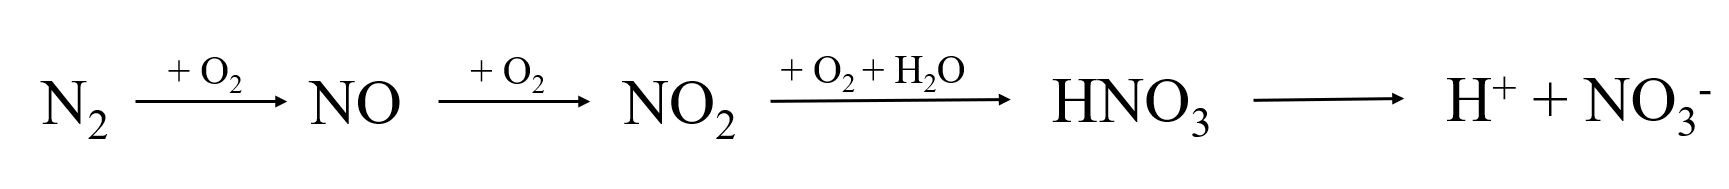 Quá trình chuyển hóa nitrogen trong tự nhiên olm.